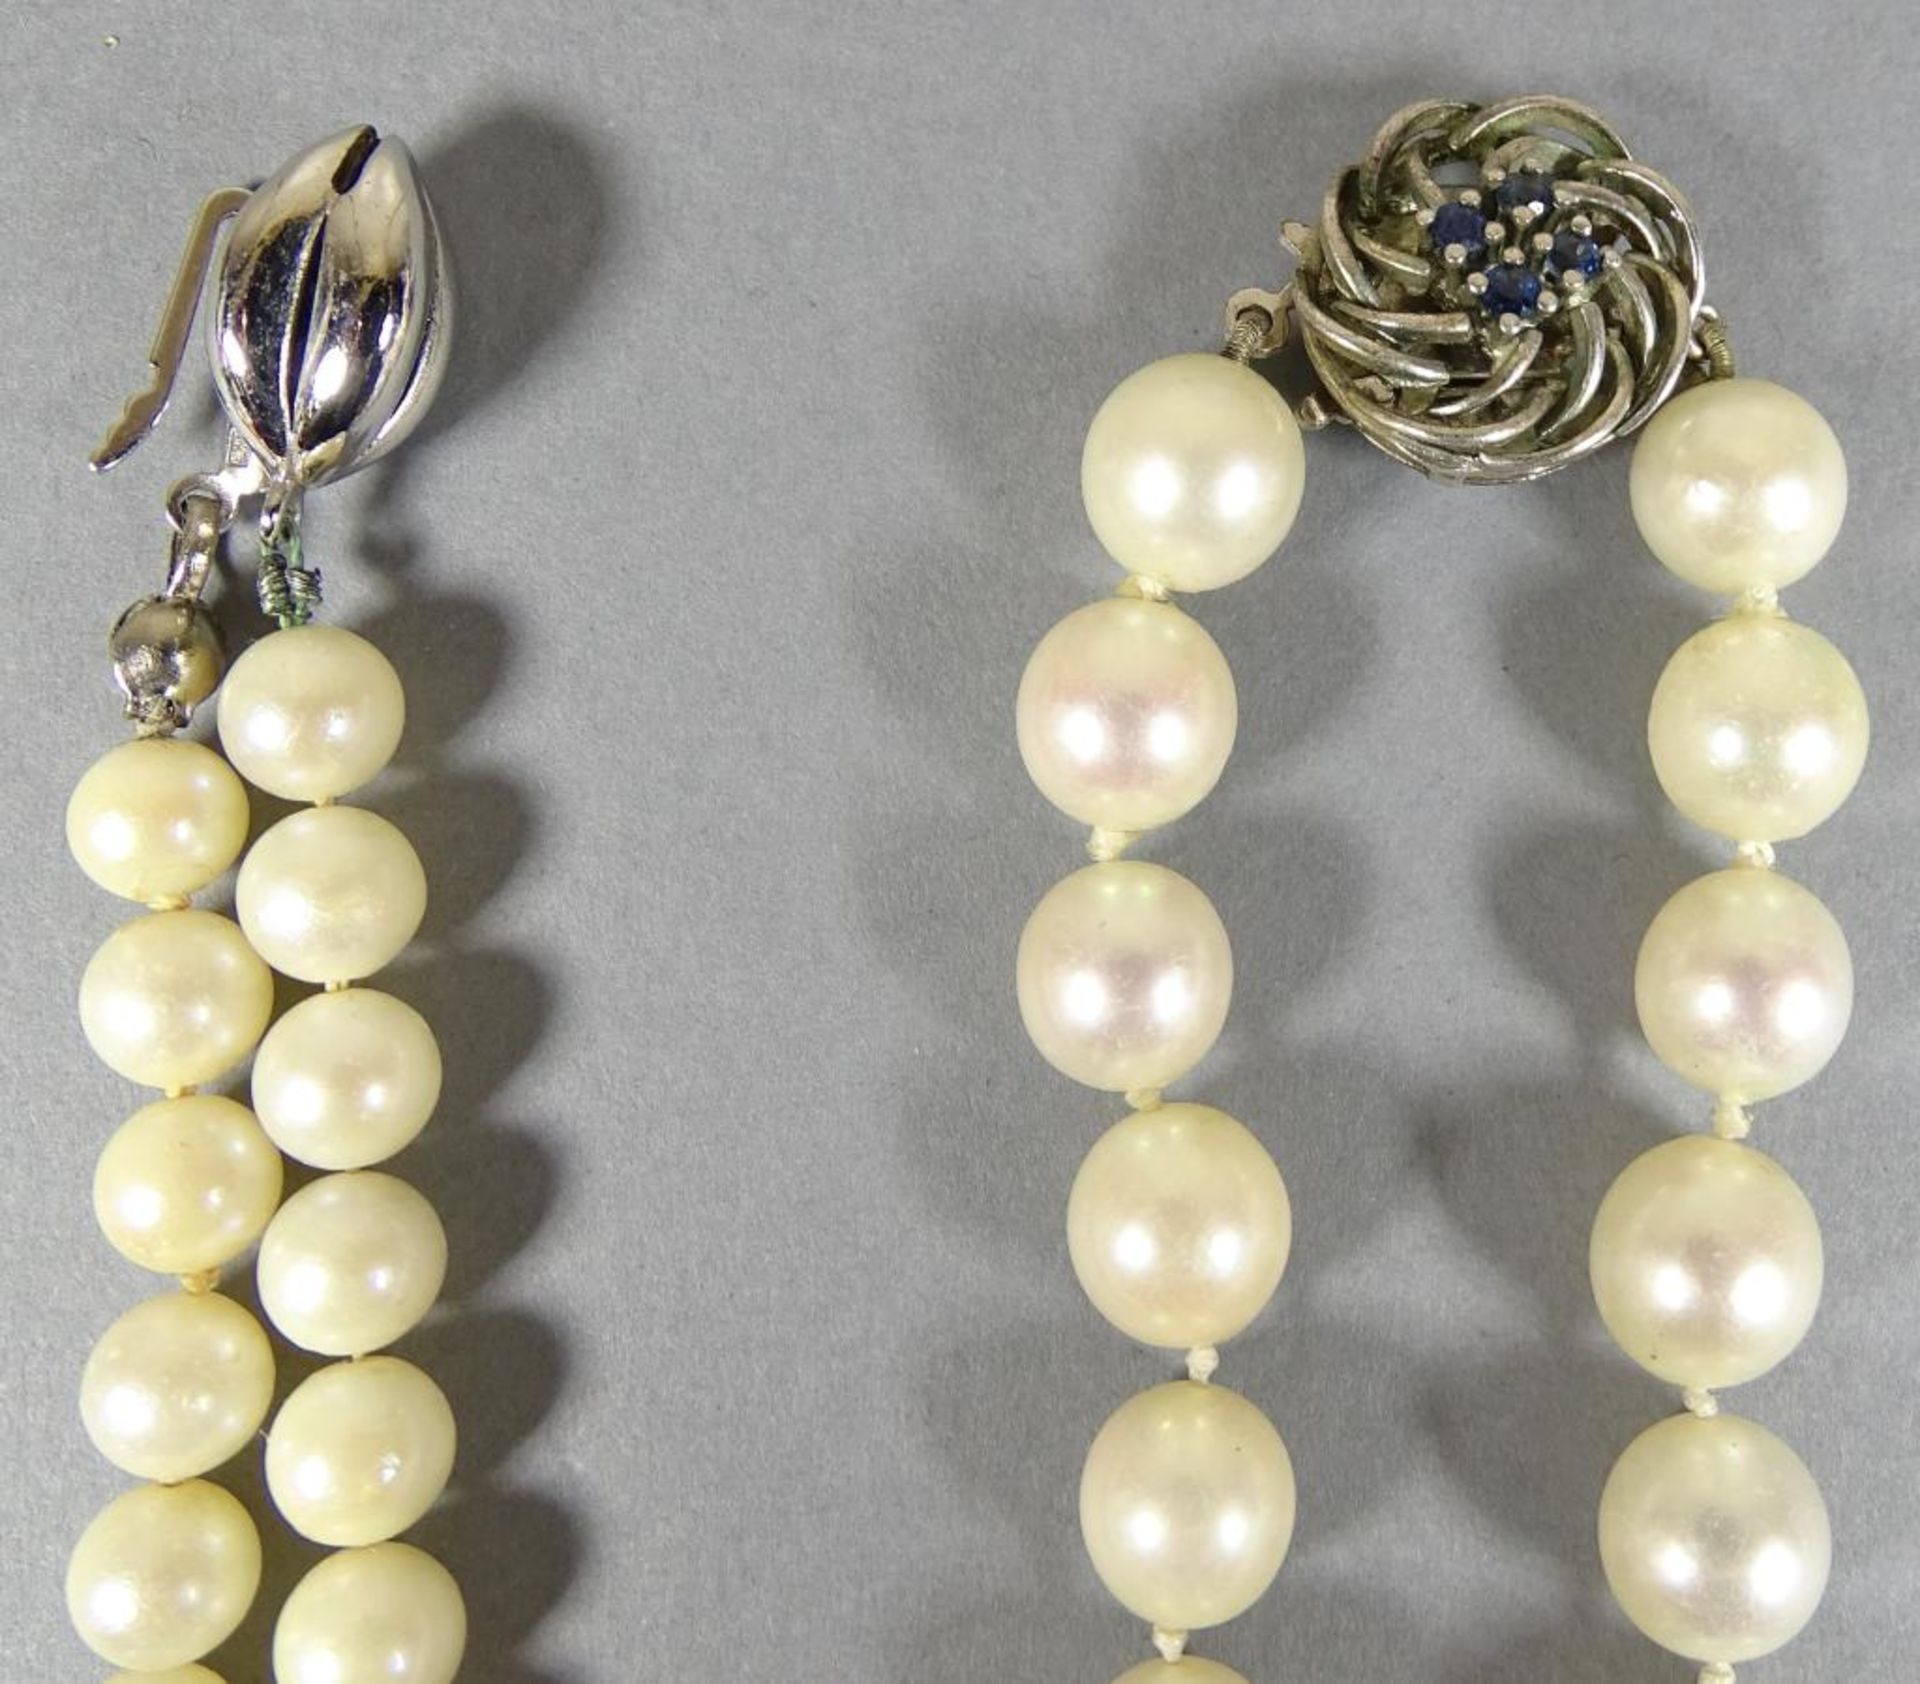 Halsketten und Armband,Akoya Perlen,Silberschließen,Armband beschädigt,ges.gew.76,2g - Bild 2 aus 3